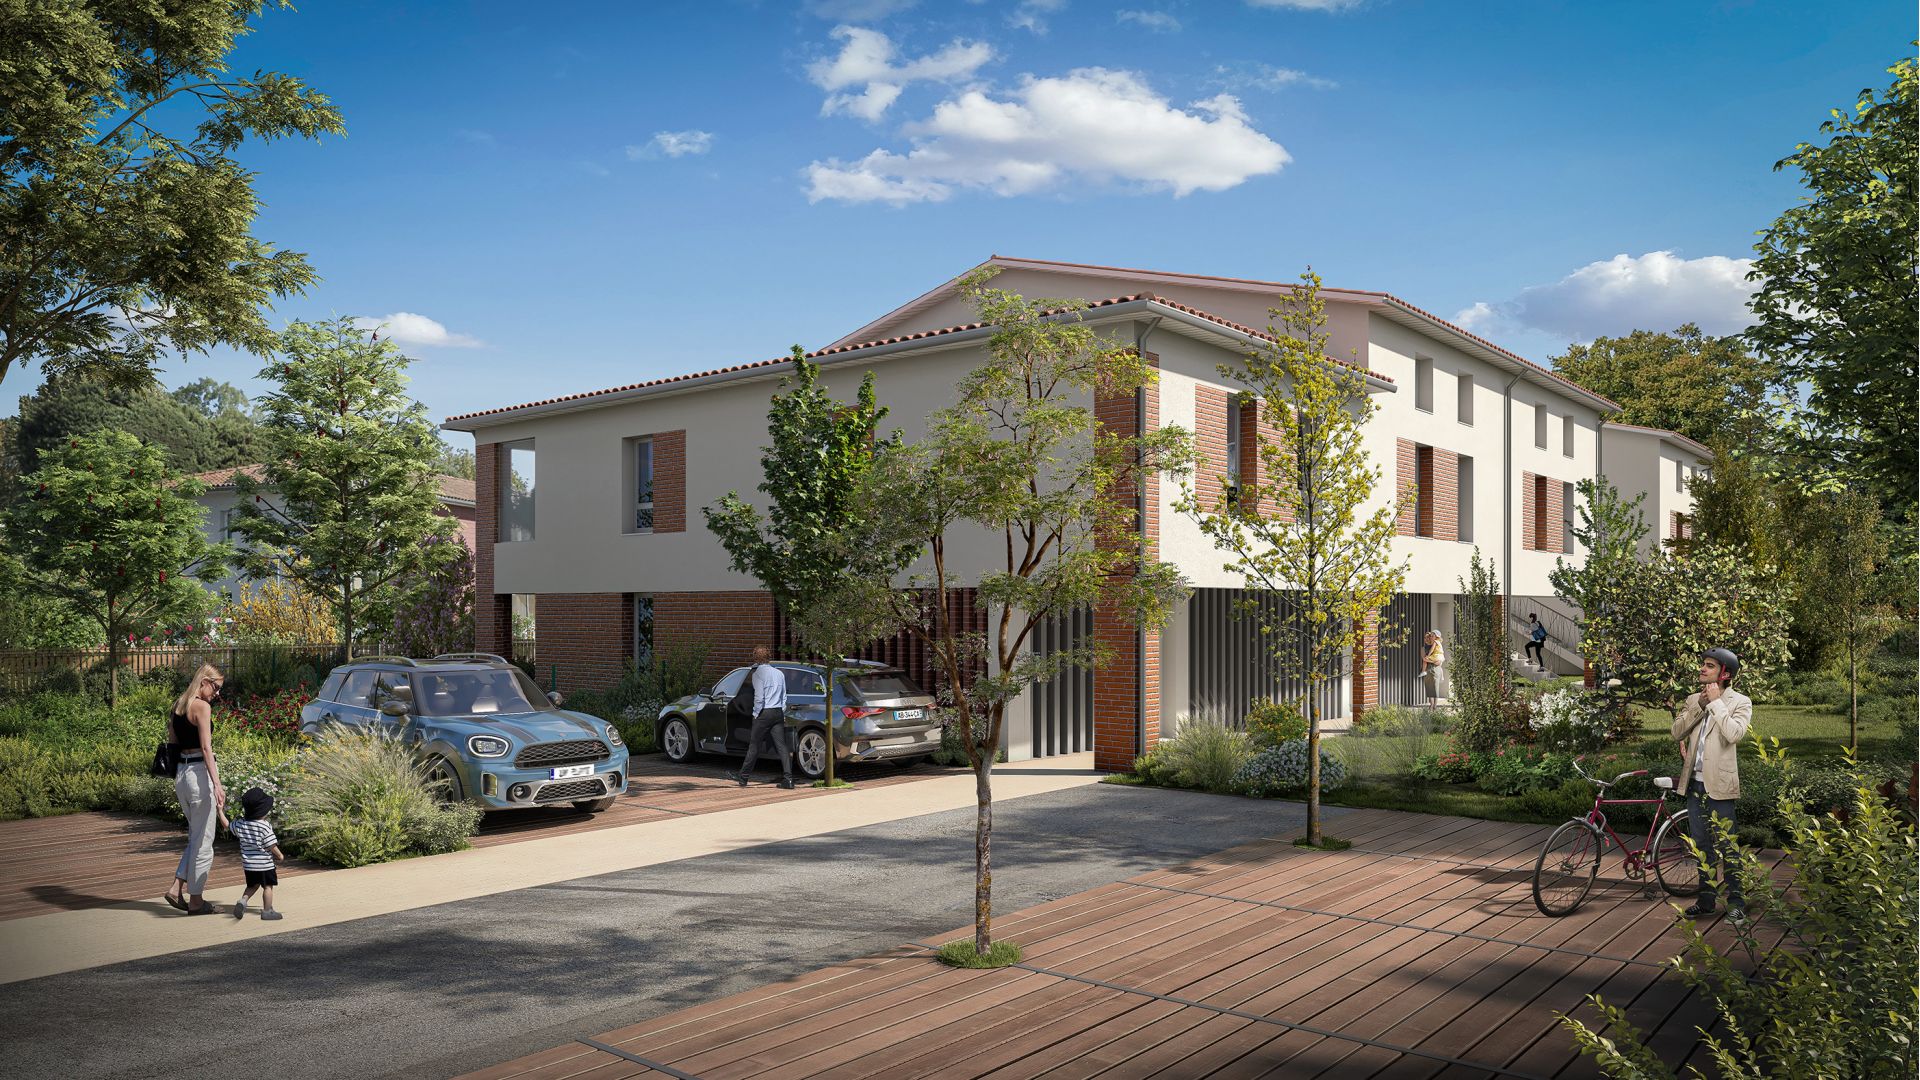 Greencity immobilier - achat appartements neufs du T2 au T4 - Résidence Le Sénéchal - 31240 Saint-Jean